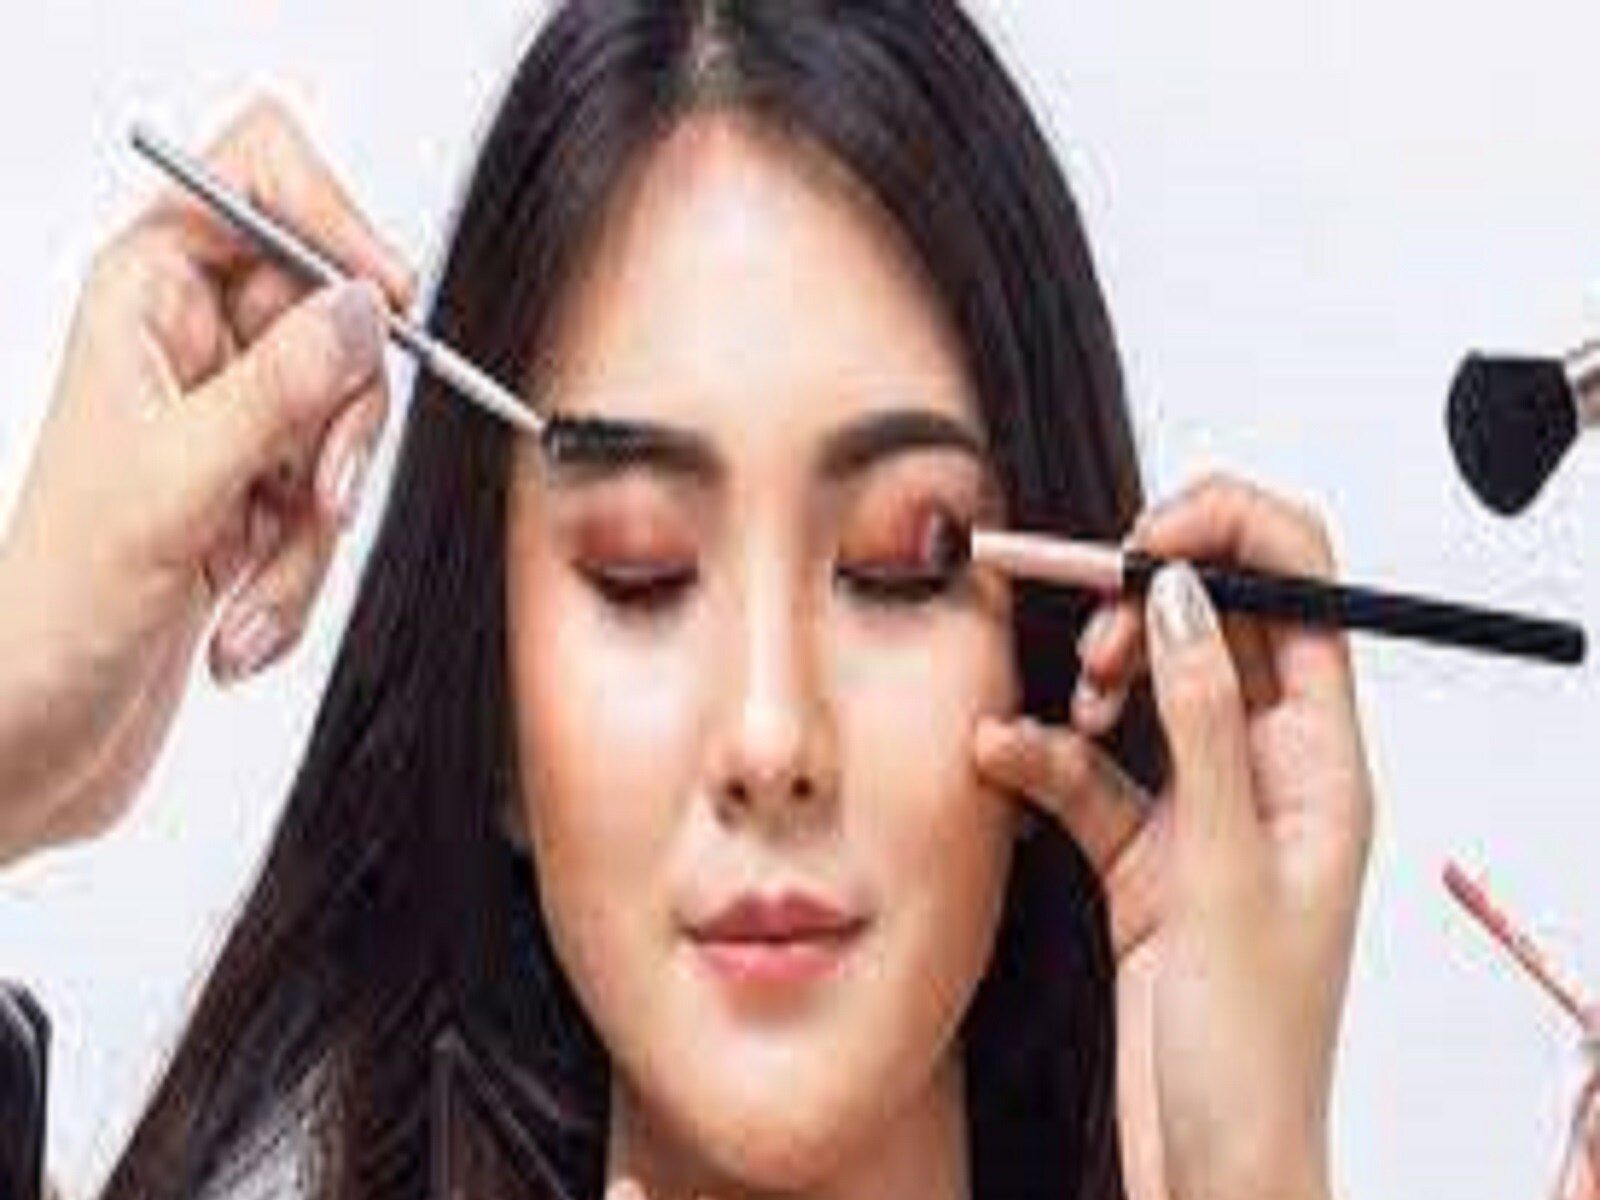 Makeup Tips: ਅੱਜ-ਕੱਲ੍ਹ ਚੱਲ ਰਿਹਾ ਮੈਰੀਨੇਟ ਮੇਕਅੱਪ ਦਾ ਰੁਝਾਨ, ਜਾਣੋ ਕਰਨ ਦਾ ਆਸਾਨ ਤਰੀਕਾ